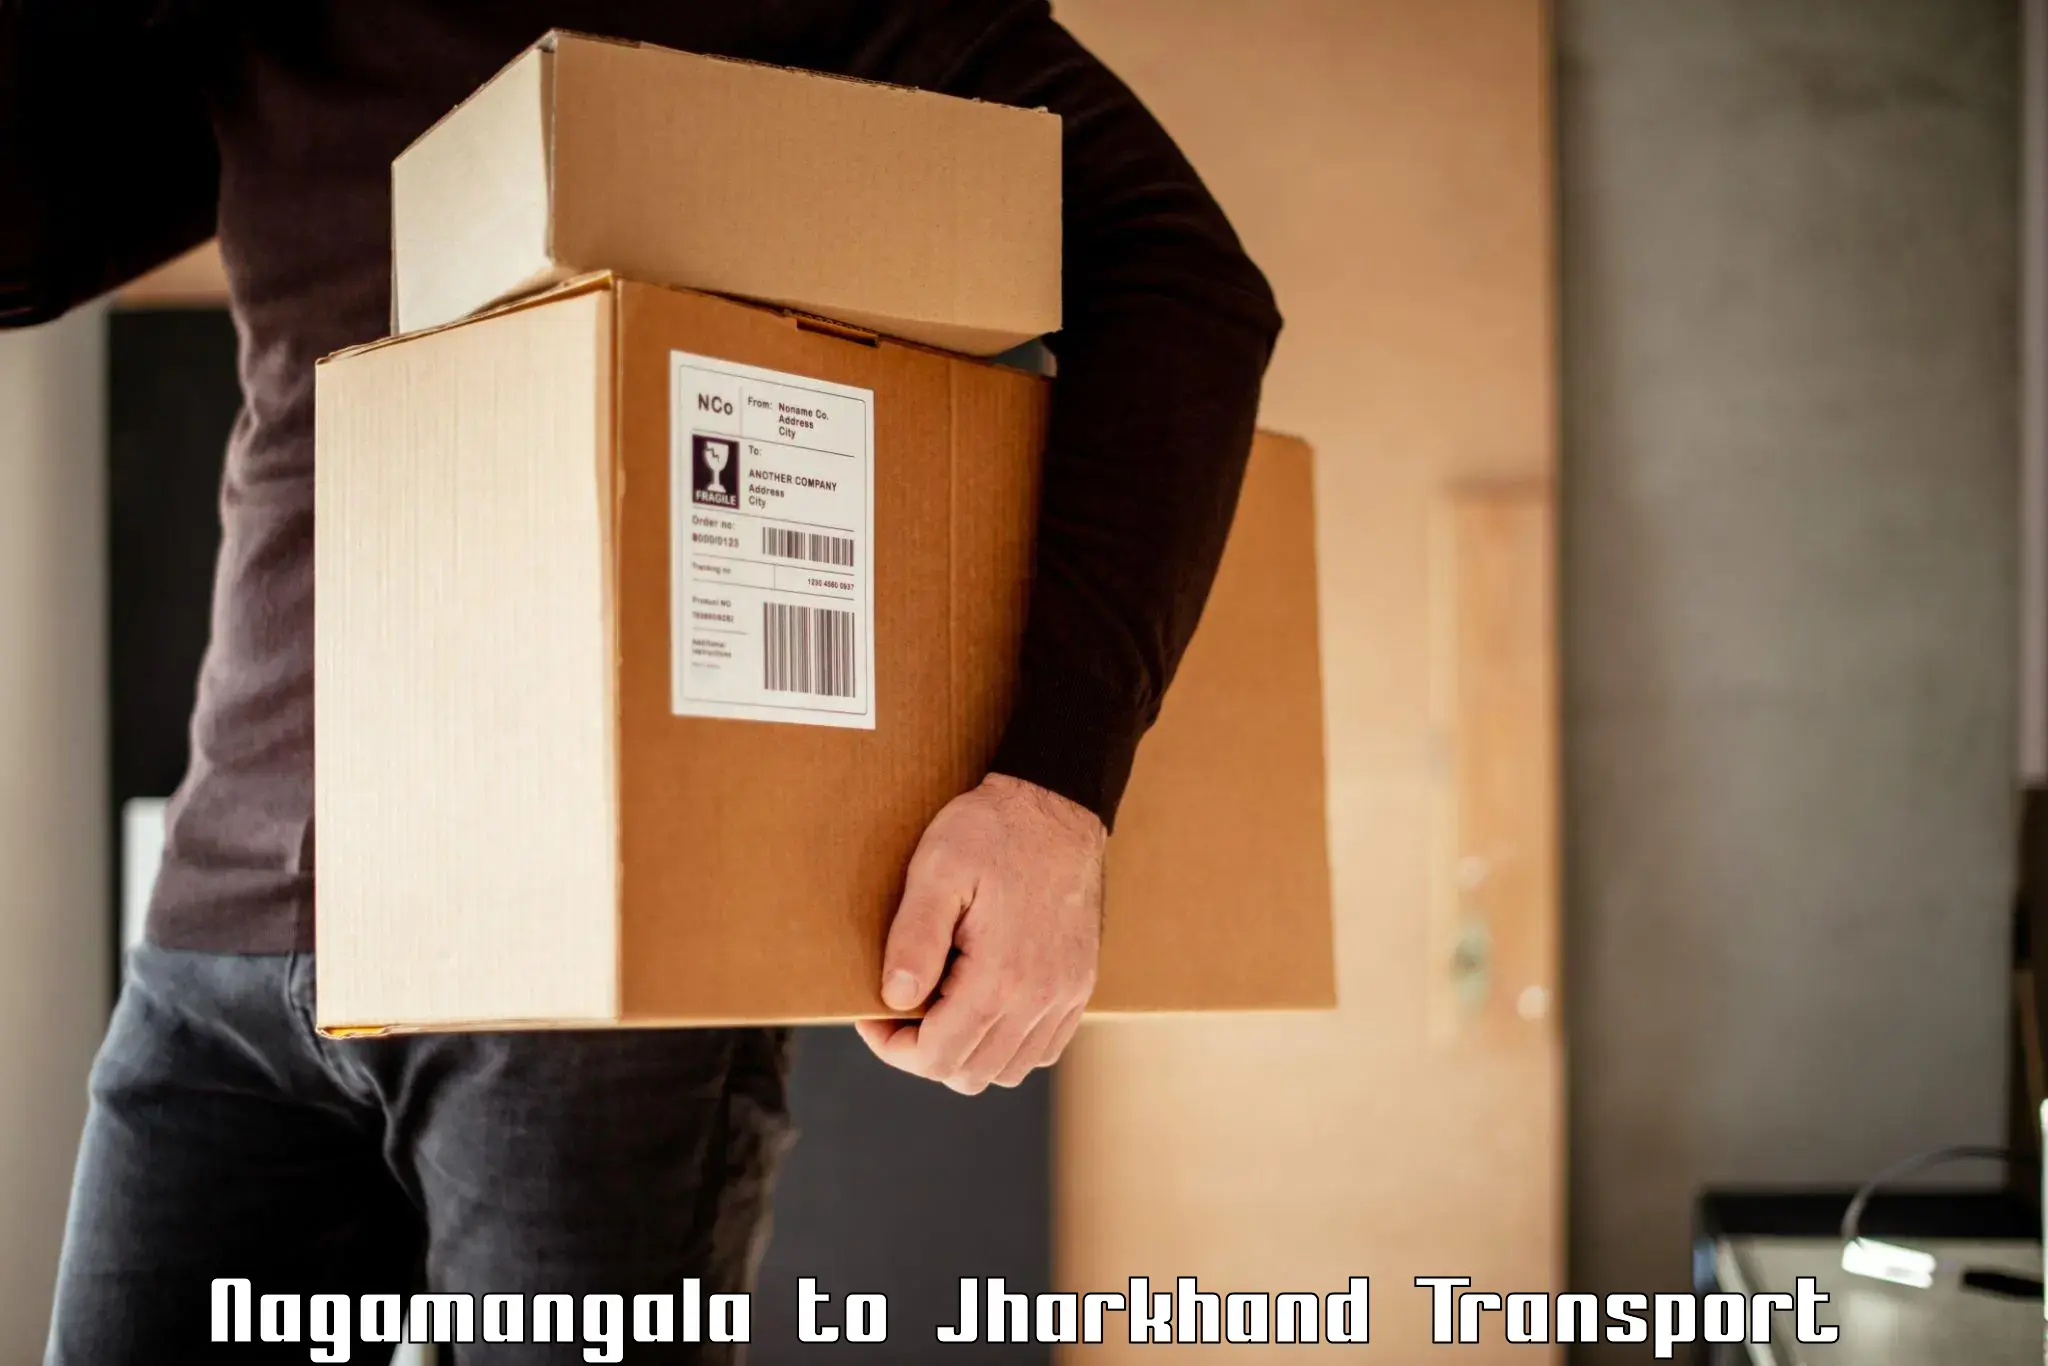 Pick up transport service Nagamangala to Jharkhand